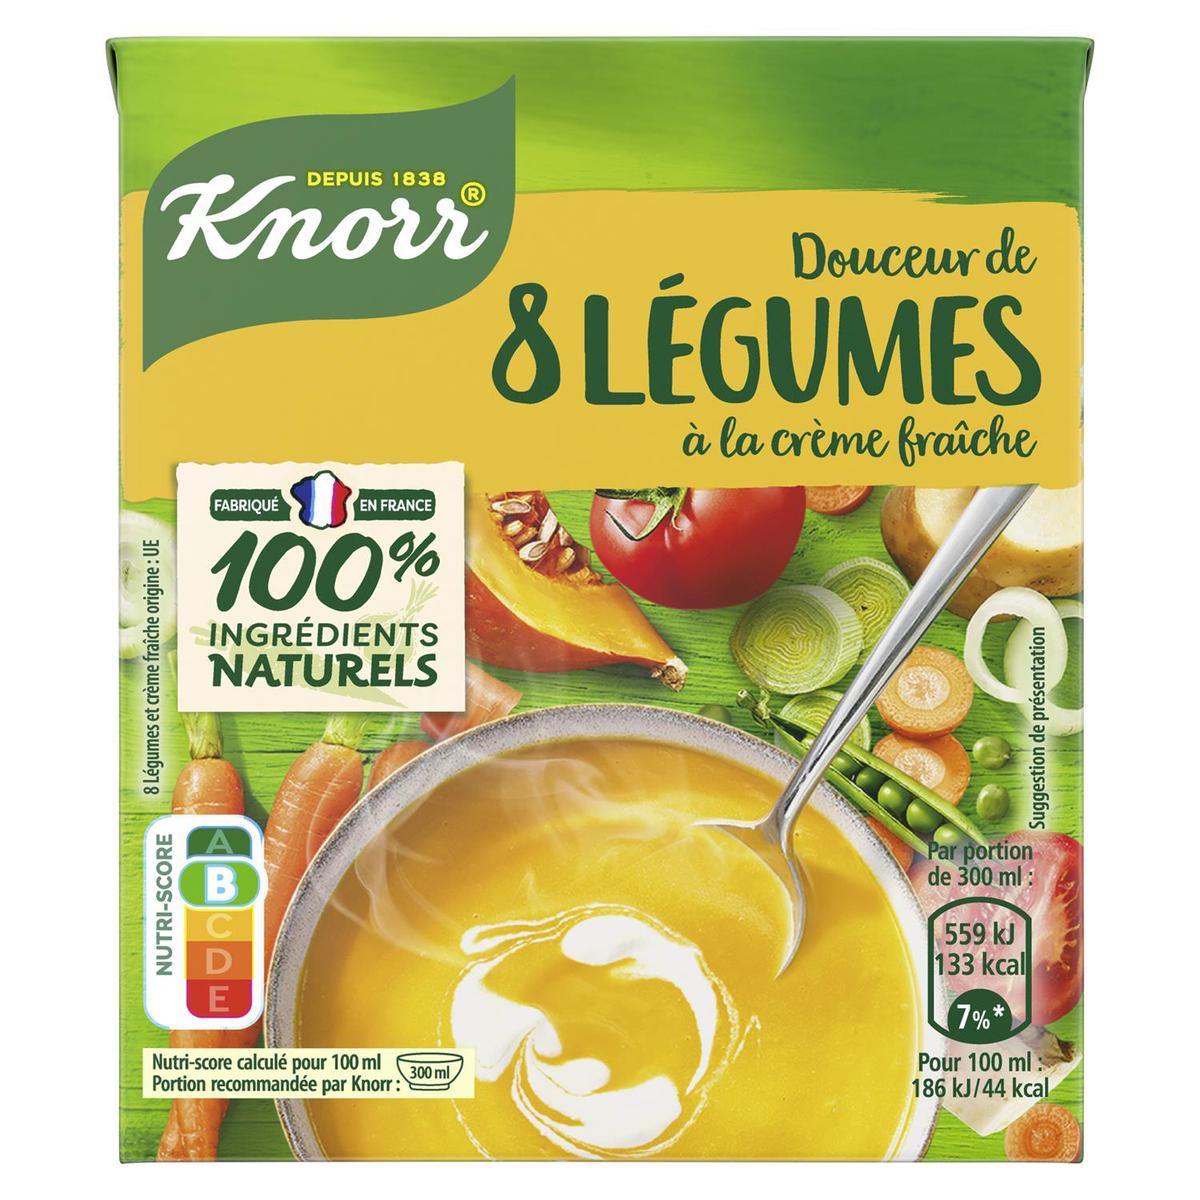 Acheter Knorr Soupe Douceur de 8 légumes à la crème fraîche, 30cl